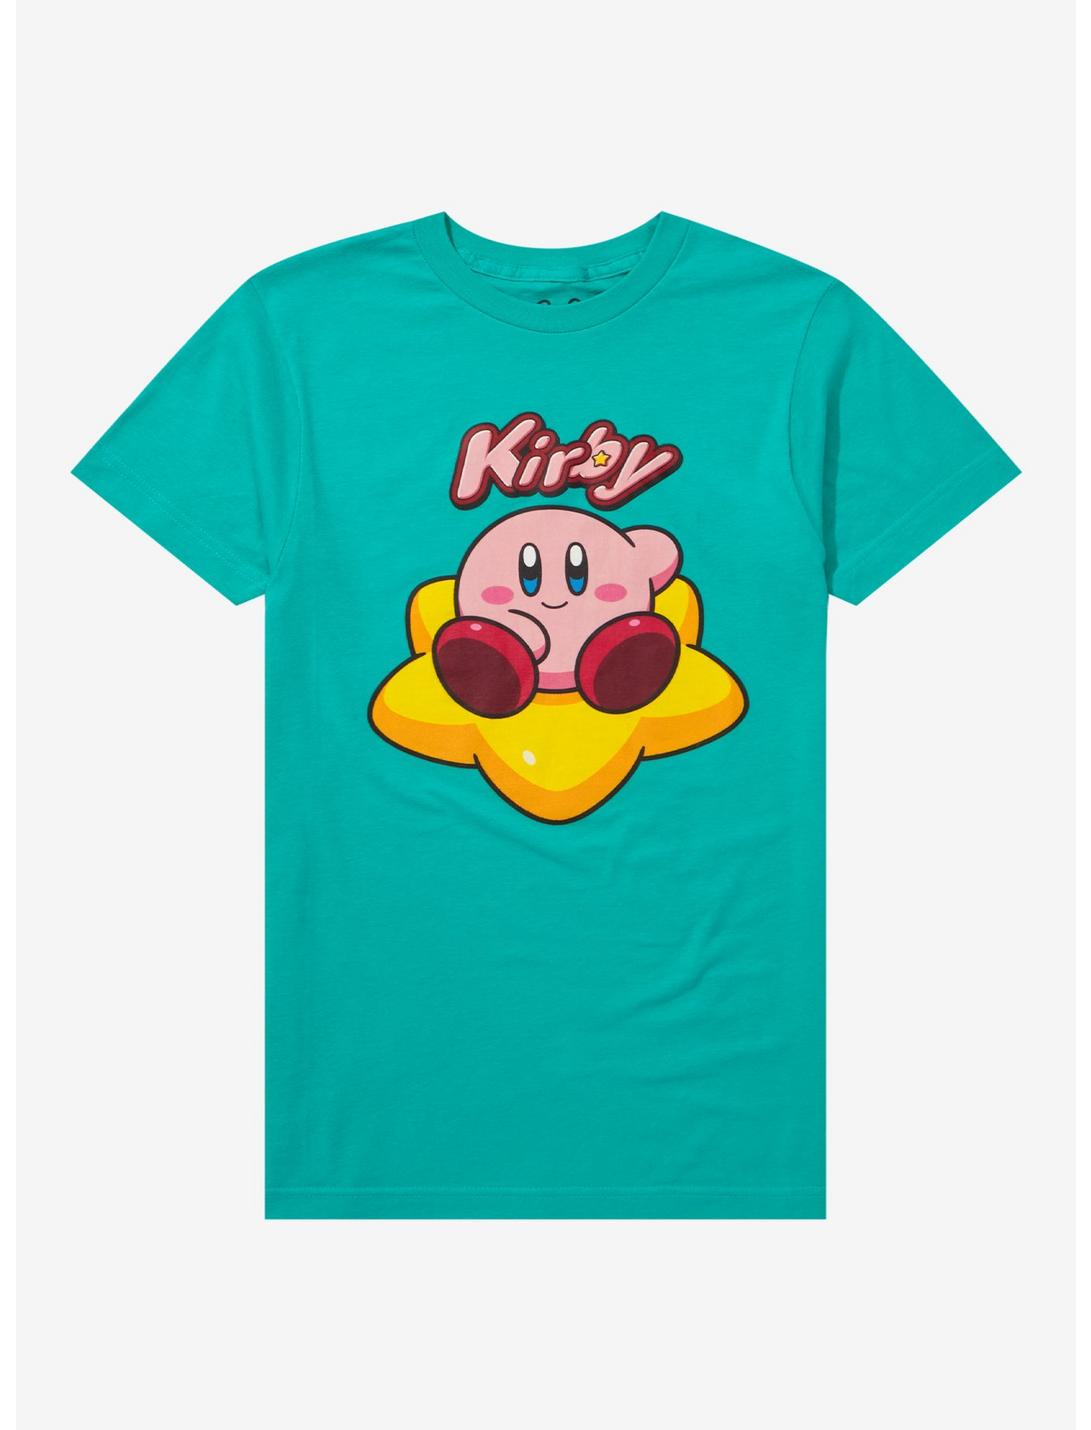 Kirby Warp Star Teal Boyfriend Fit Girls T-Shirt, MULTI, hi-res